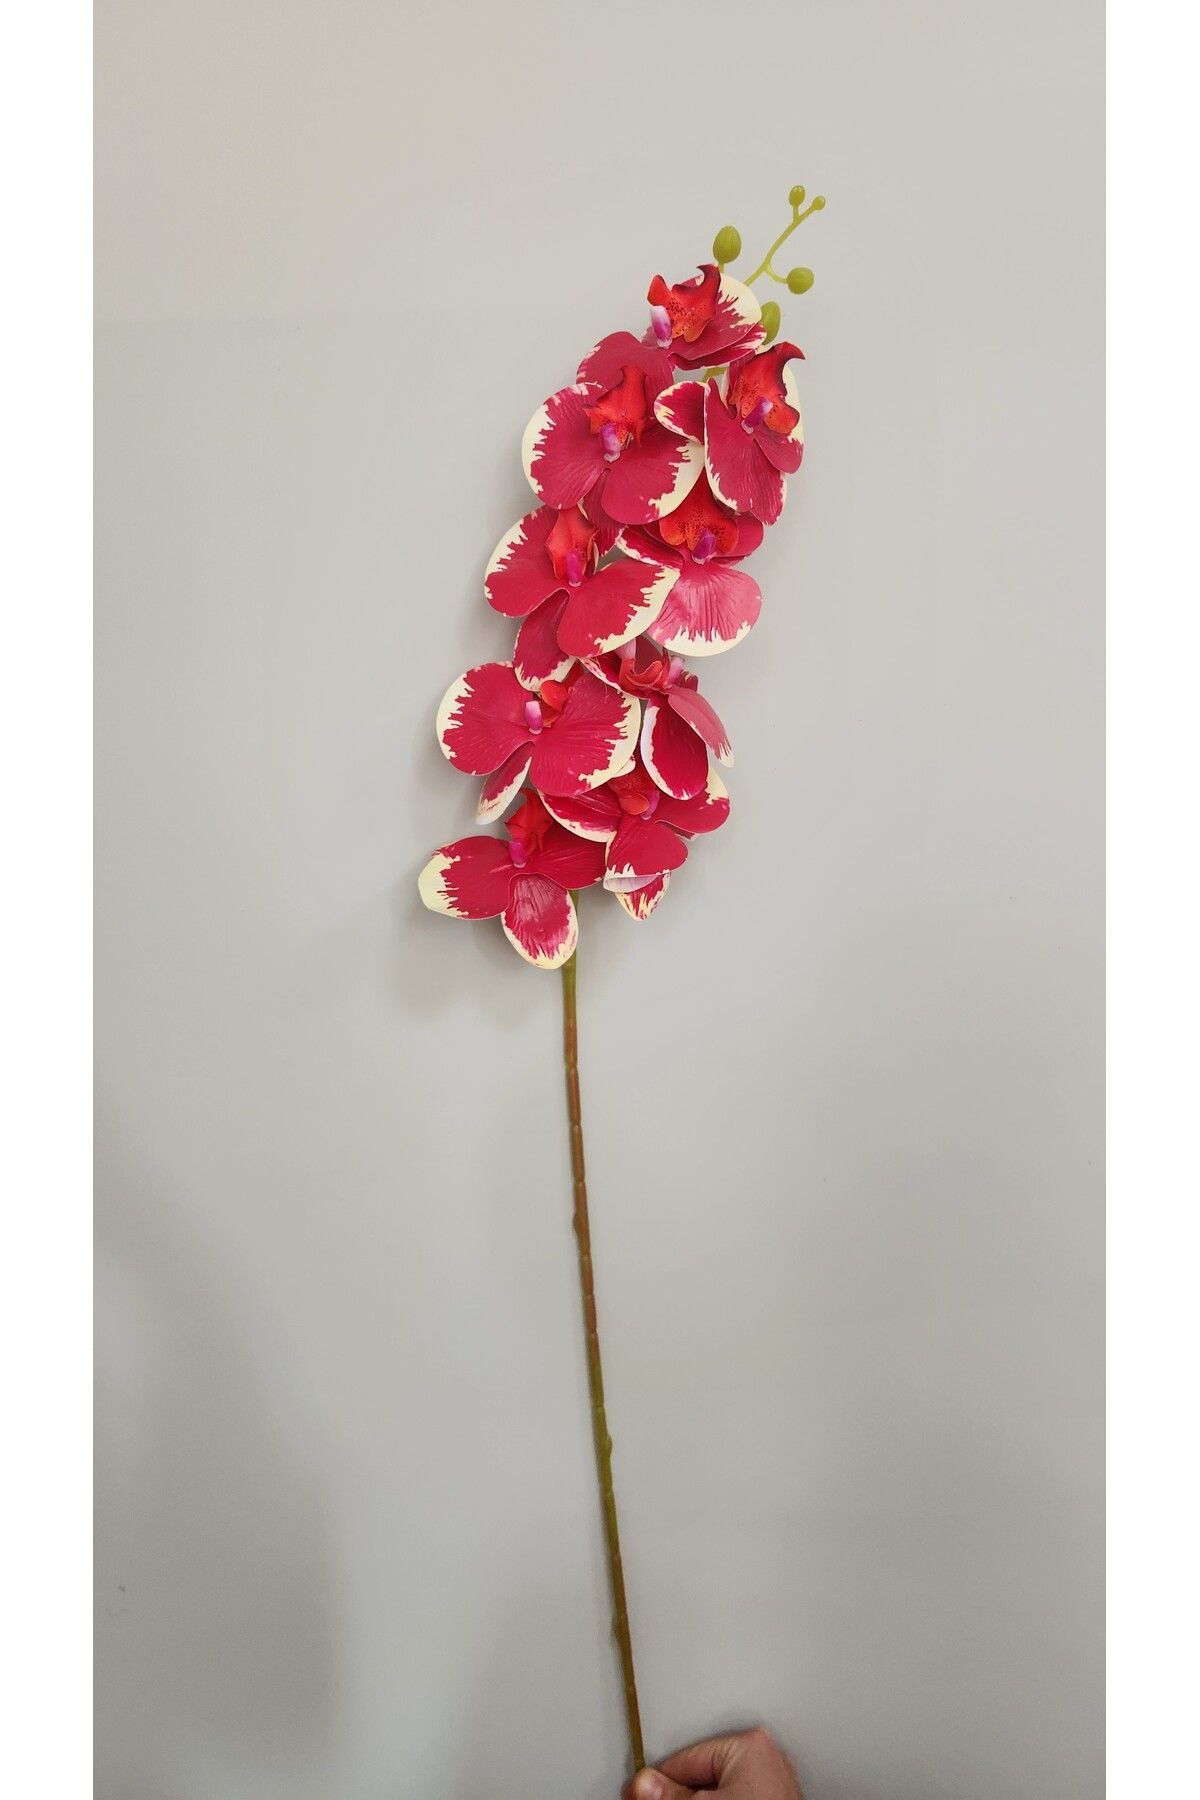 ALSHOP Gerçek Görünümlü Orkide Büyük Boy Yapay Orkide 85 Cm Çiçek kırmızı krem